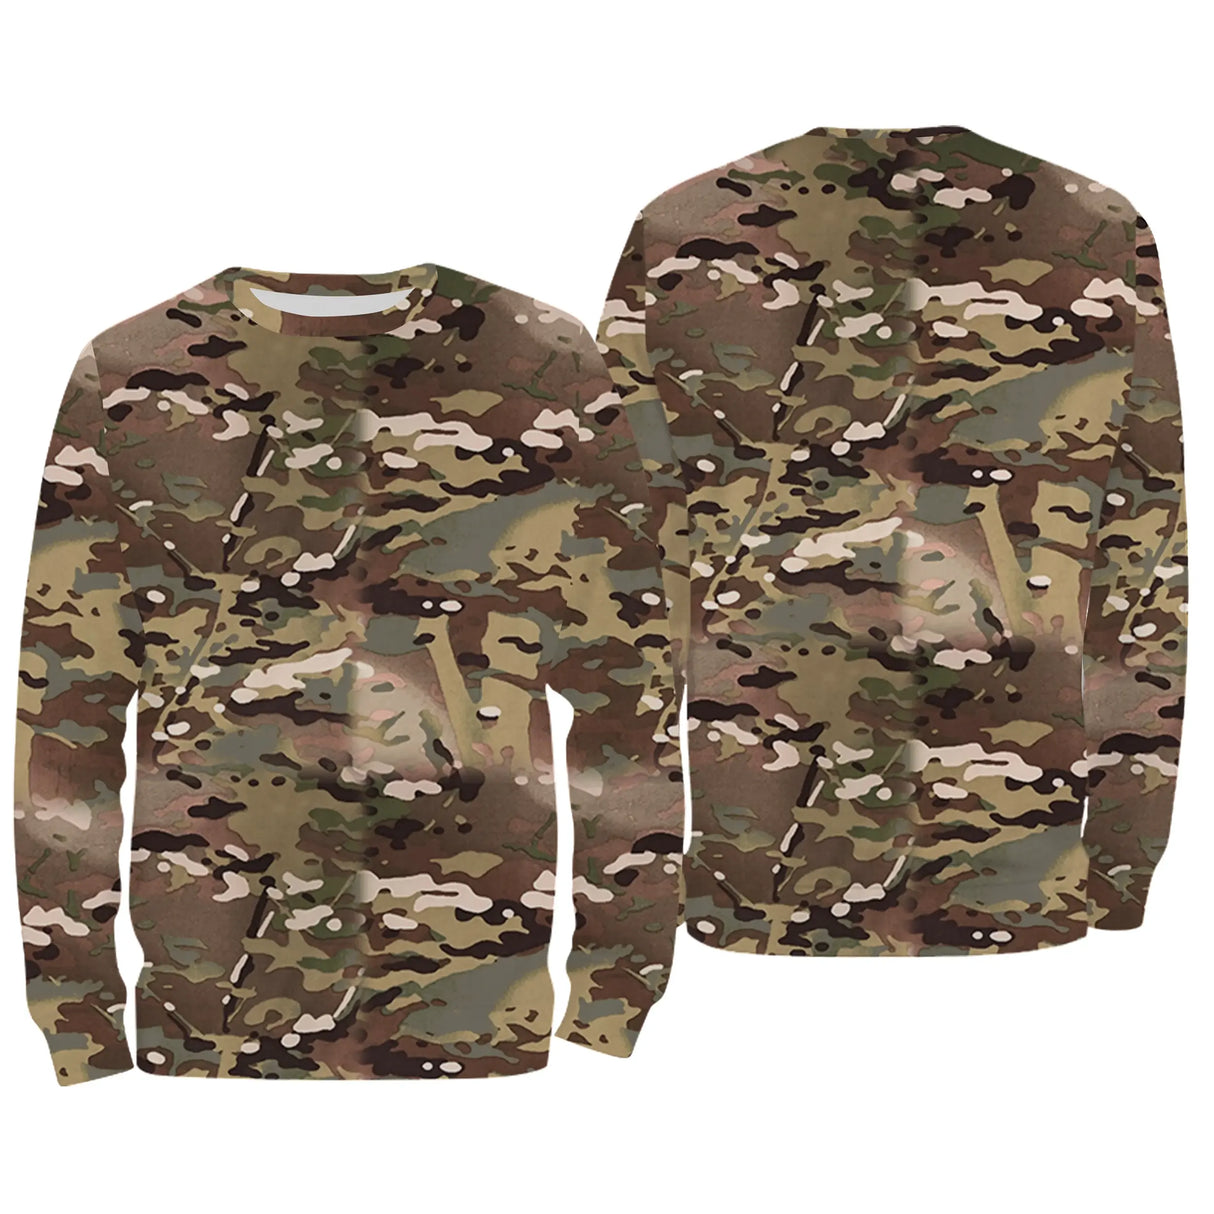 Vêtements Camouflage Pêche et Chasse, Cadeau Pêcheur, Chasseur, T-shirt Camouflage, Sweat à Capuche Anti-UV - CT06072231